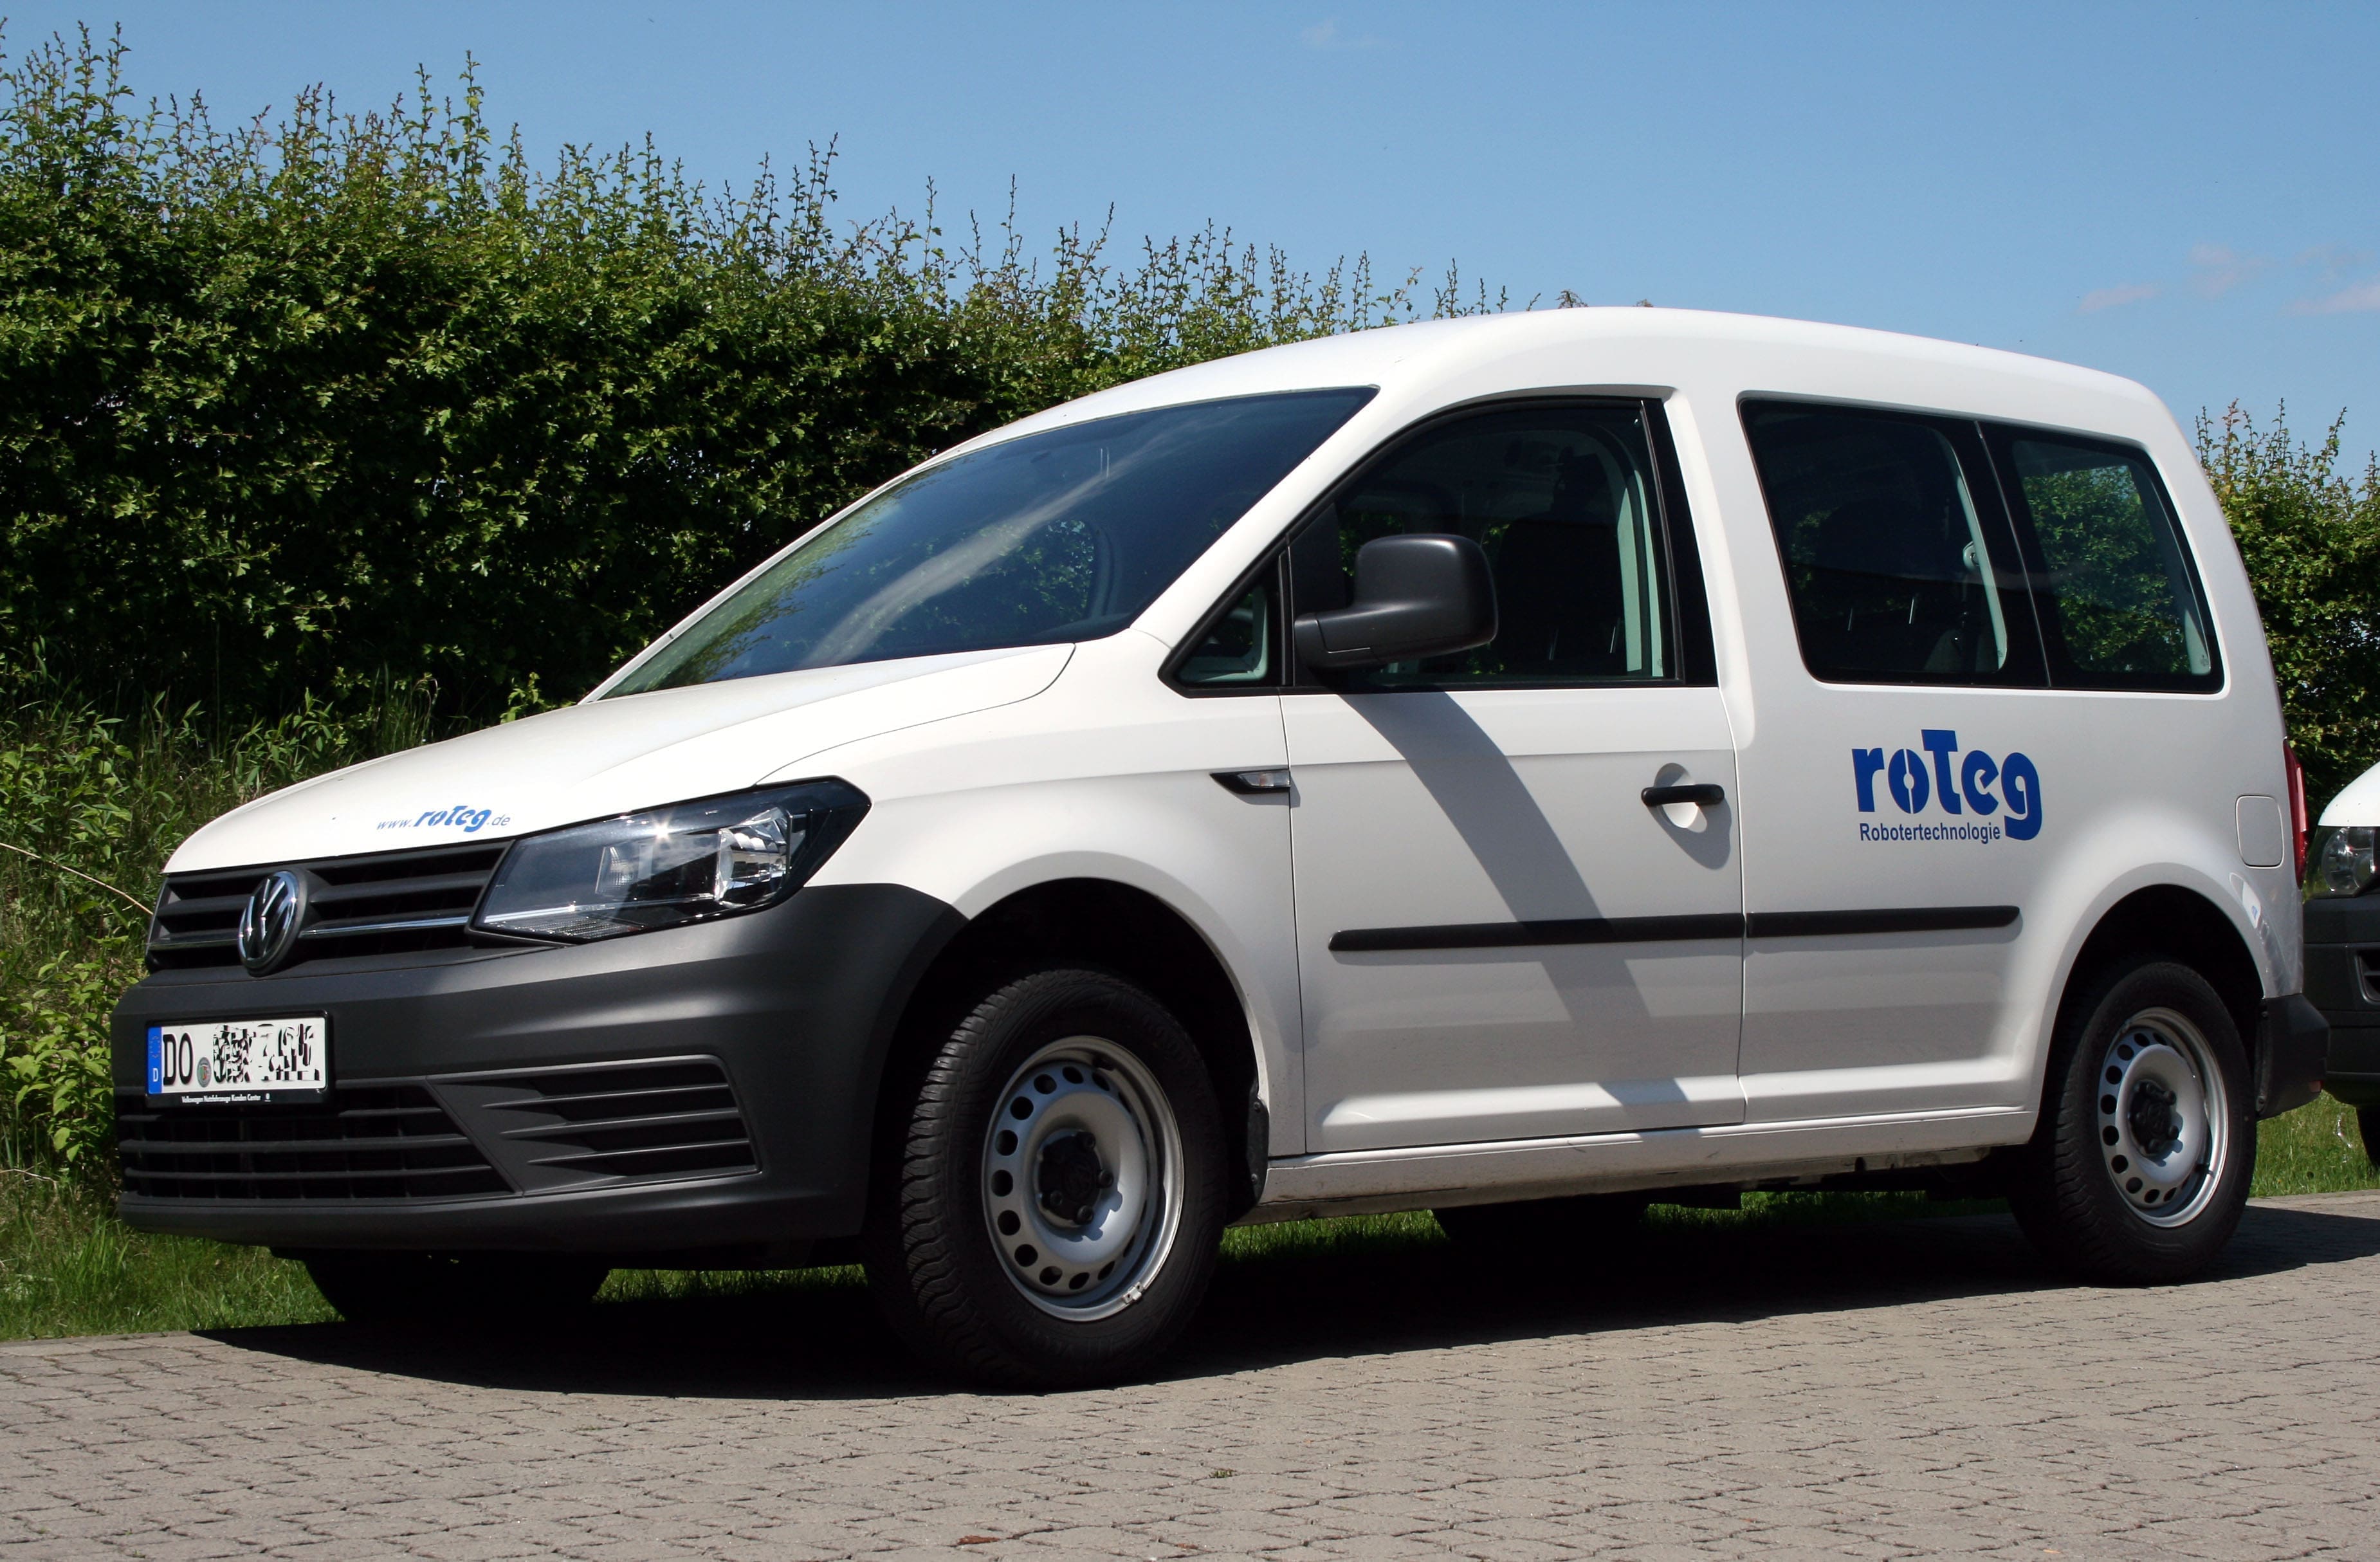 Zwei neue Caddys ergänzen die roTeg-Service-Fahrzeuge